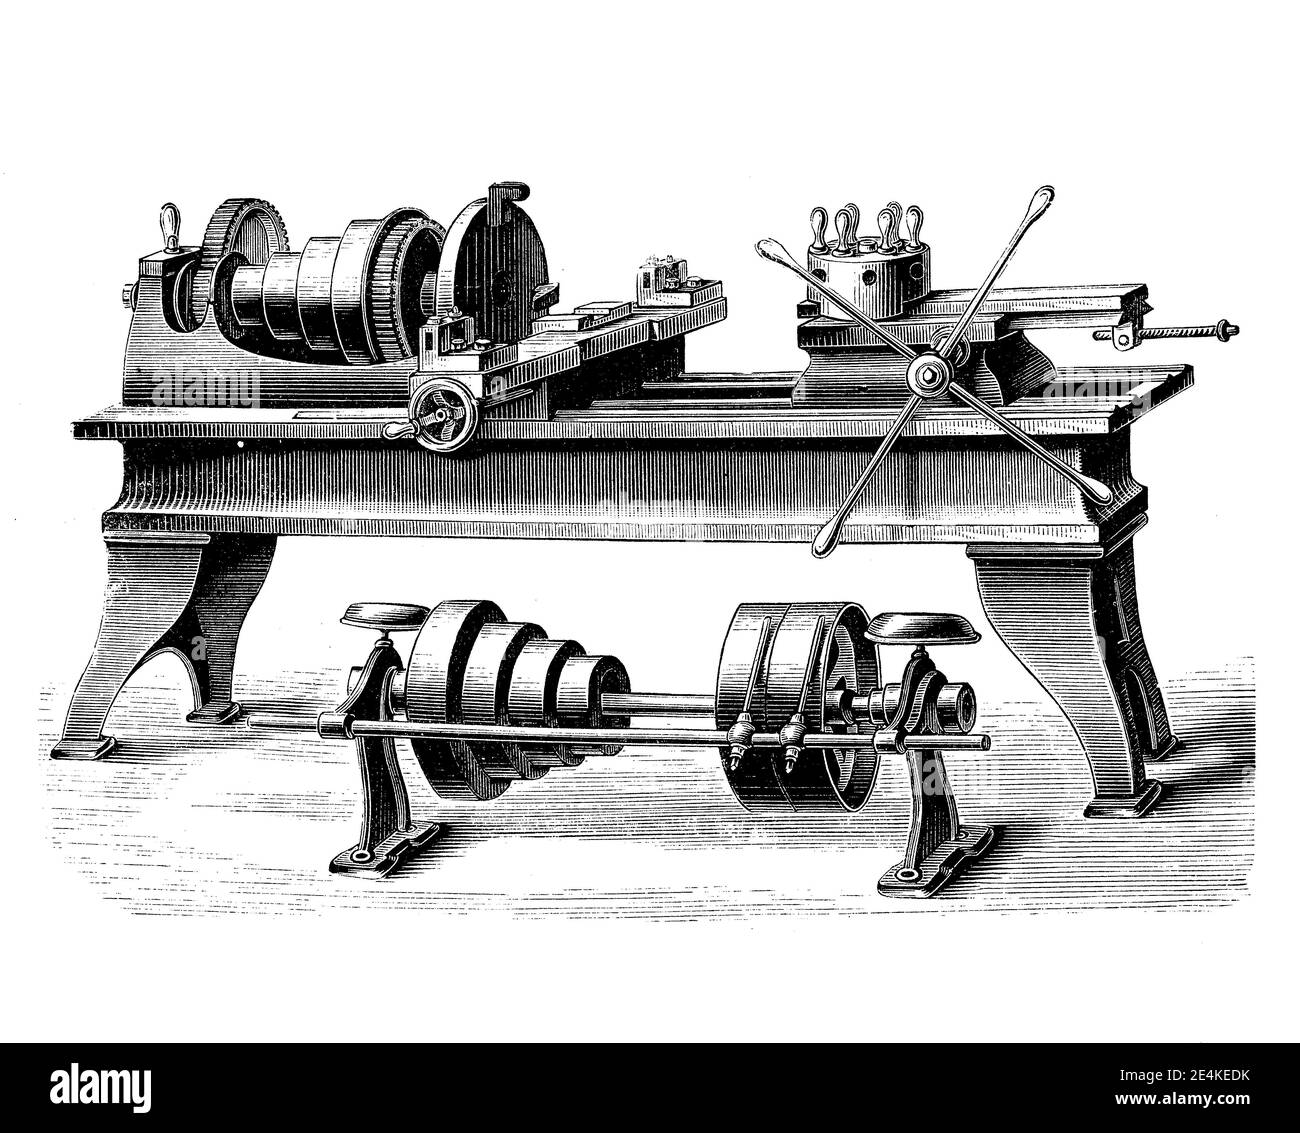 Metallbearbeitung Drehmaschine mit Revolverkopf, Werkzeughalter, die mehrere Schneidoperationen durchgeführt werden können, jeweils mit einem anderen Schneidwerkzeug in schneller Folge, 19. Jahrhundert Gravur Stockfoto